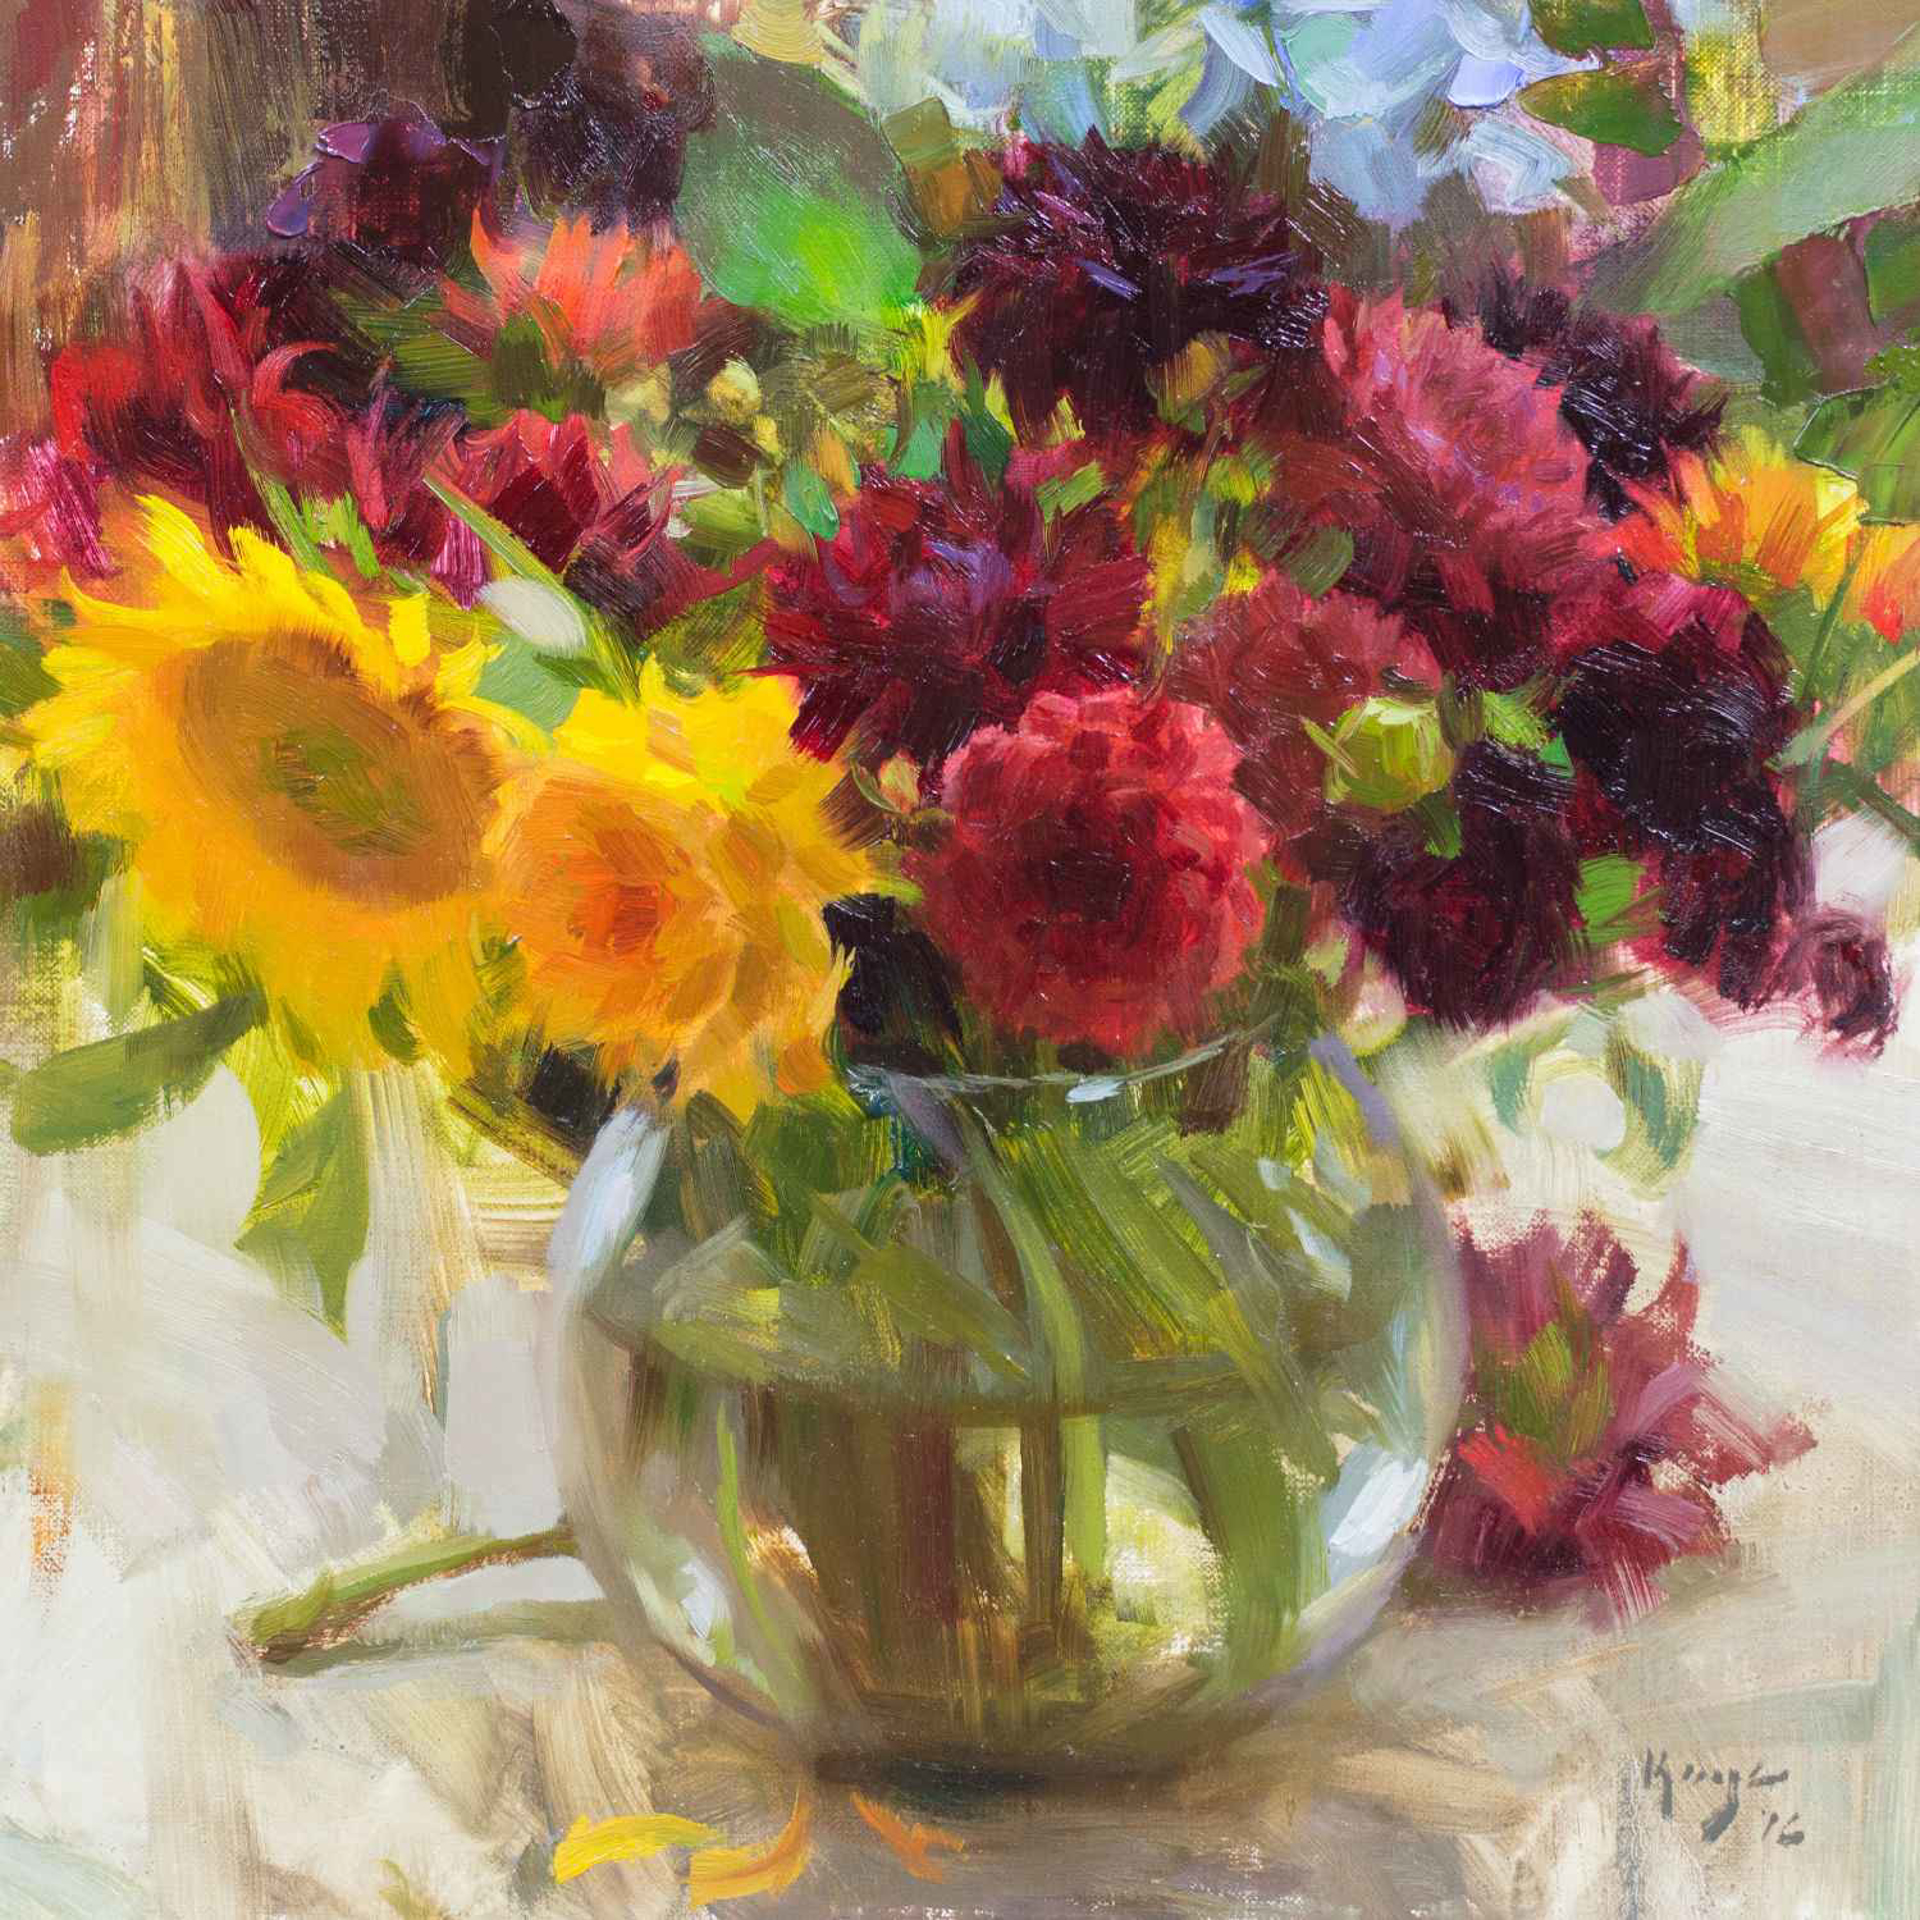 Bowl of Flowers by Daniel Keys